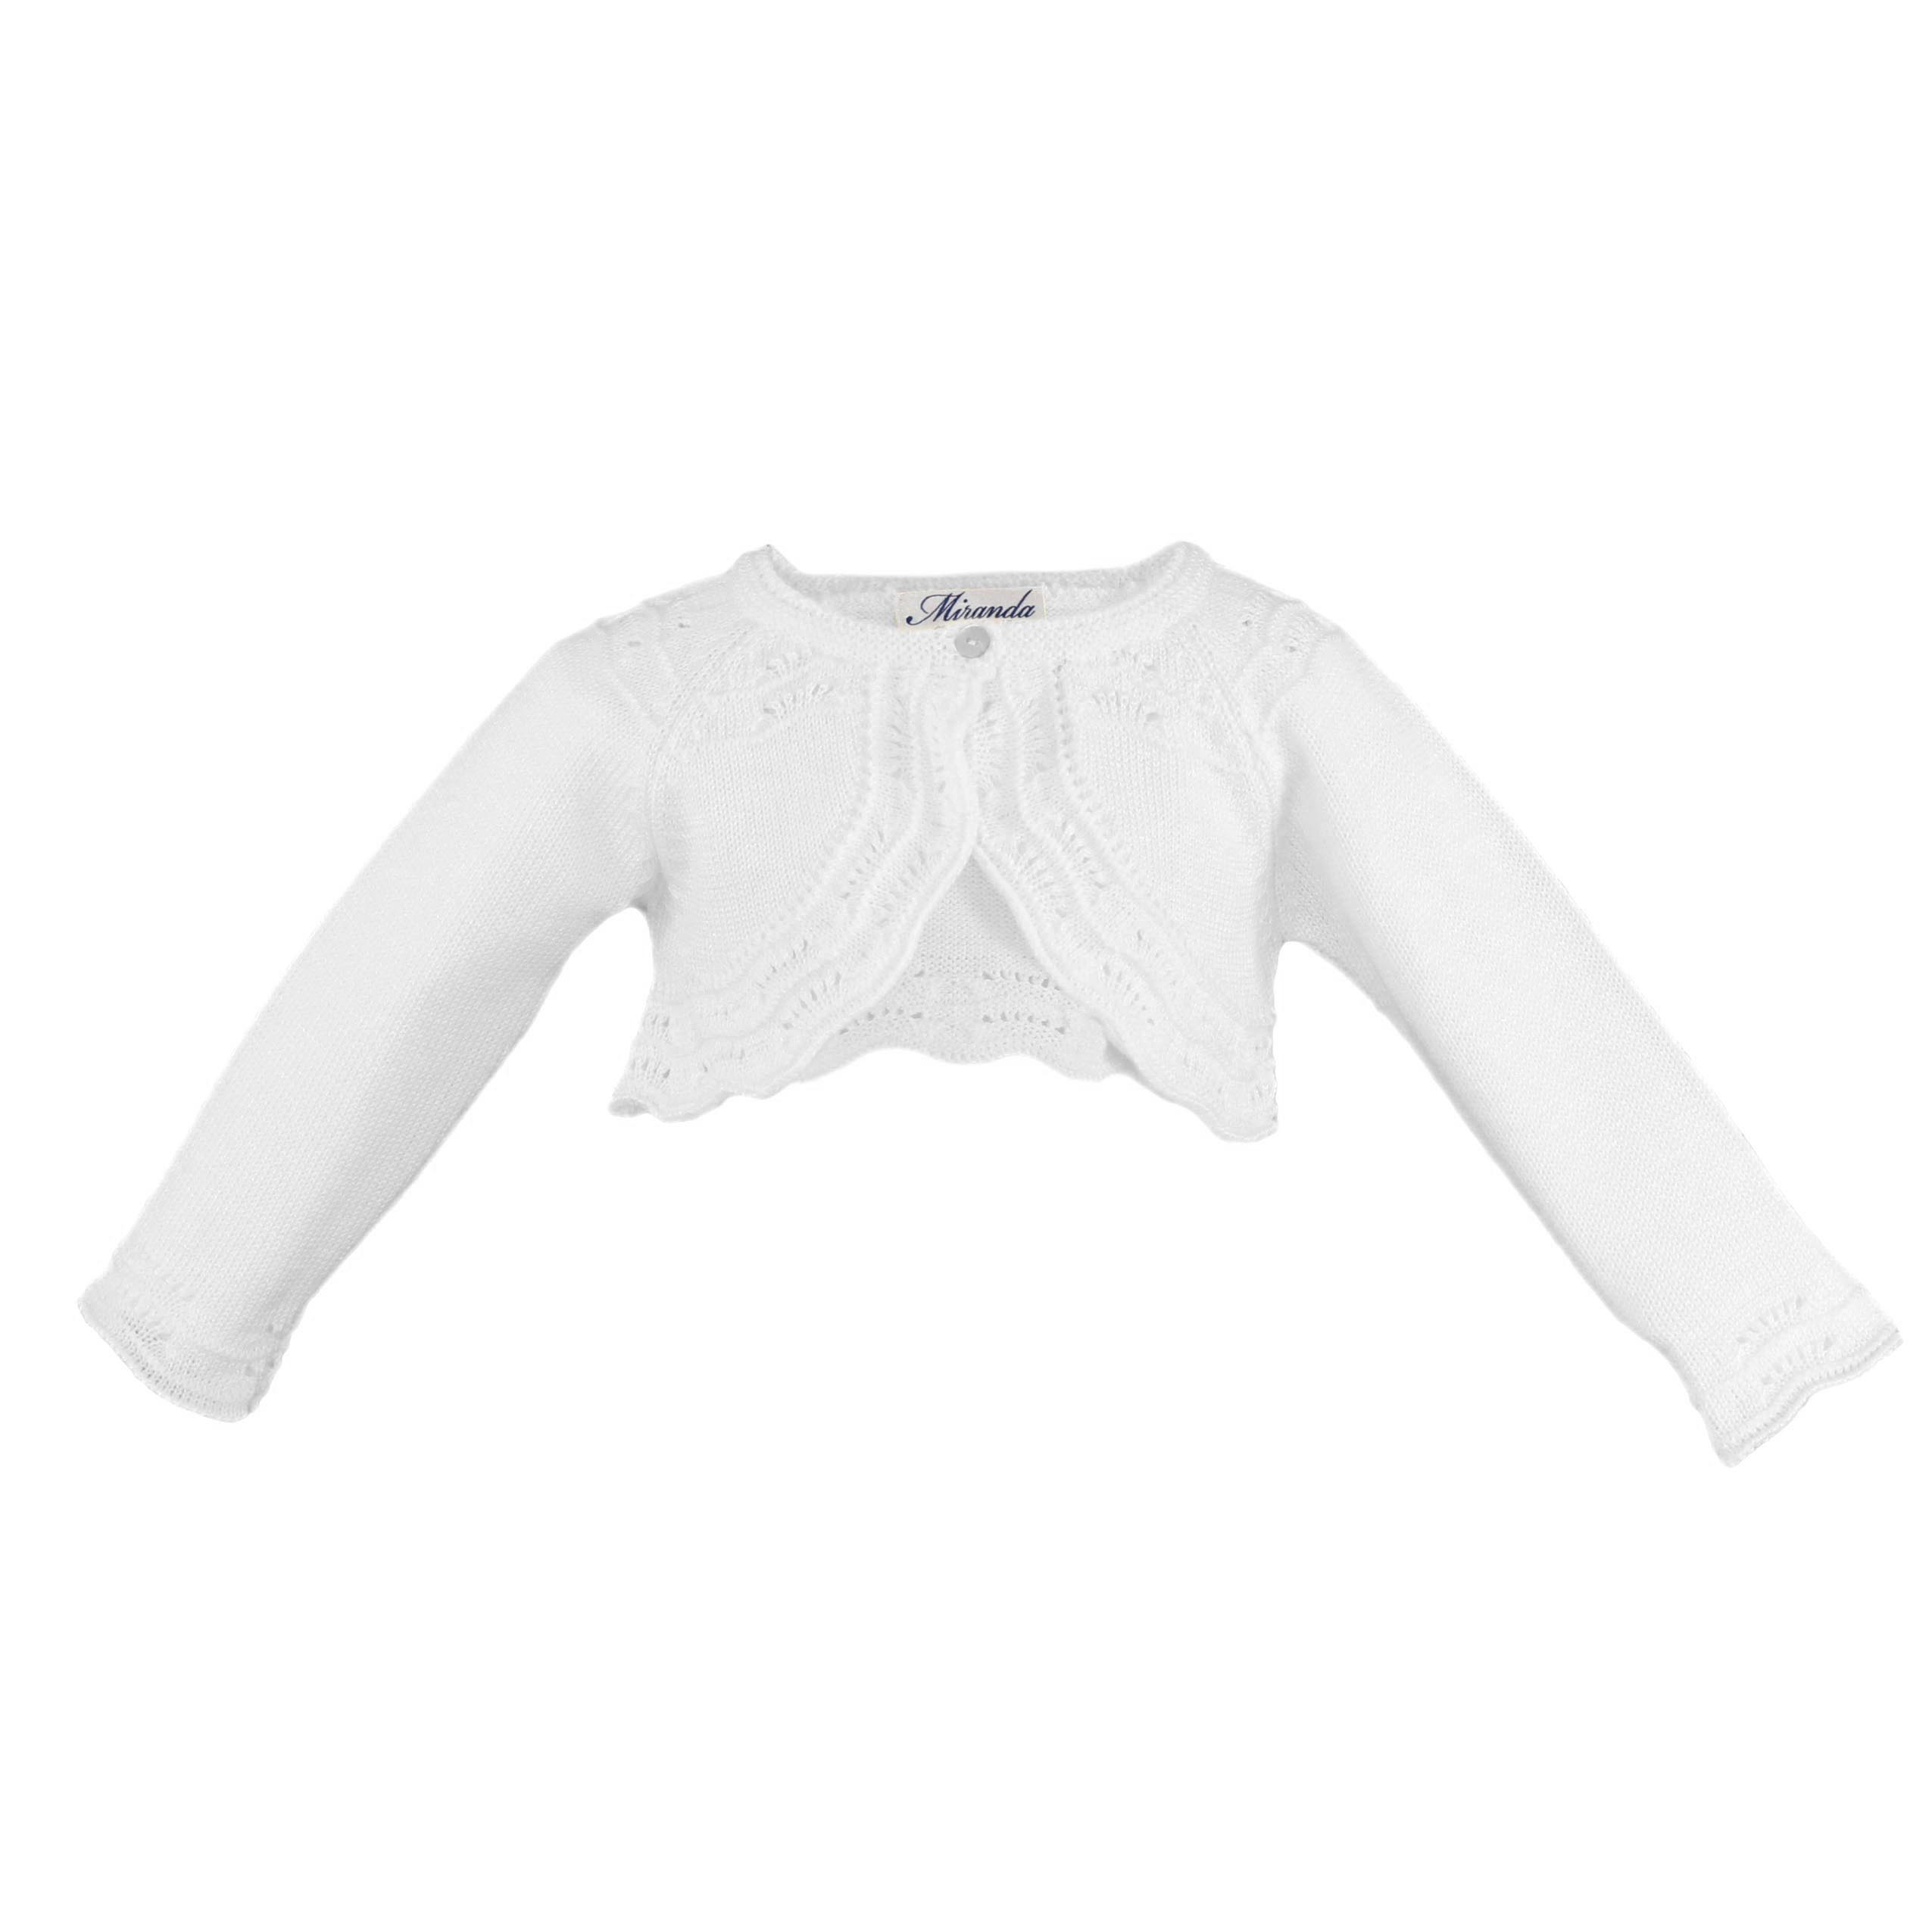 Rebeca para vestido color blanco n1 Miranda 0200 - La boutique de AyA